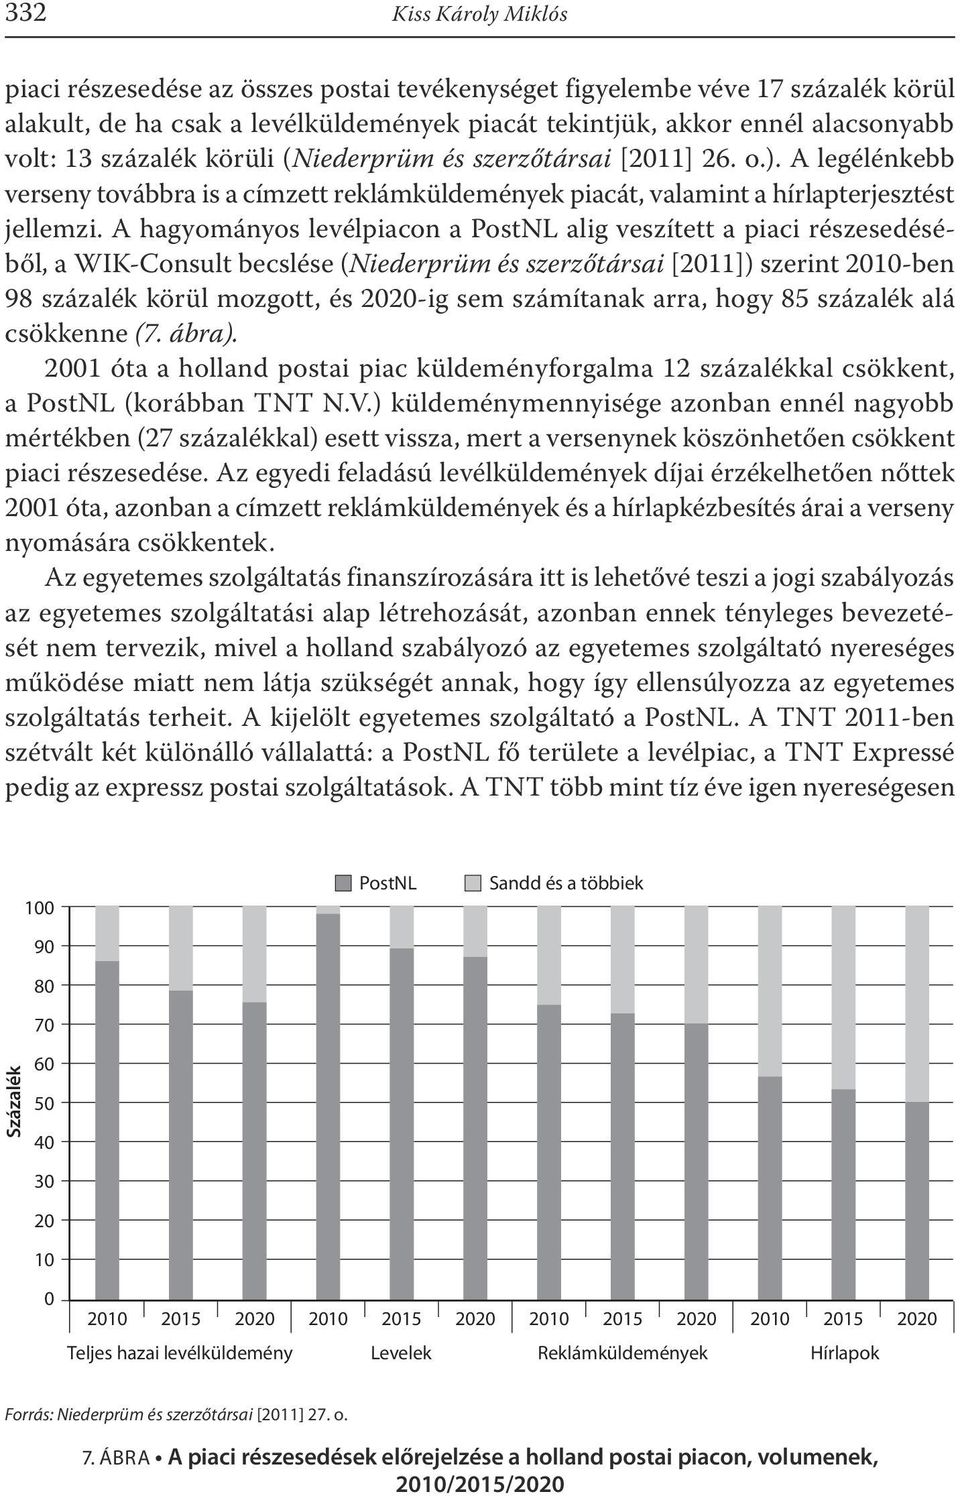 A hagyományos levélpiacon a PostNL alig veszített a piaci részesedéséből, a WIK-Consult becslése (Niederprüm és szerzőtársai [2011]) szerint 2010-ben 98 százalék körül mozgott, és 2020-ig sem